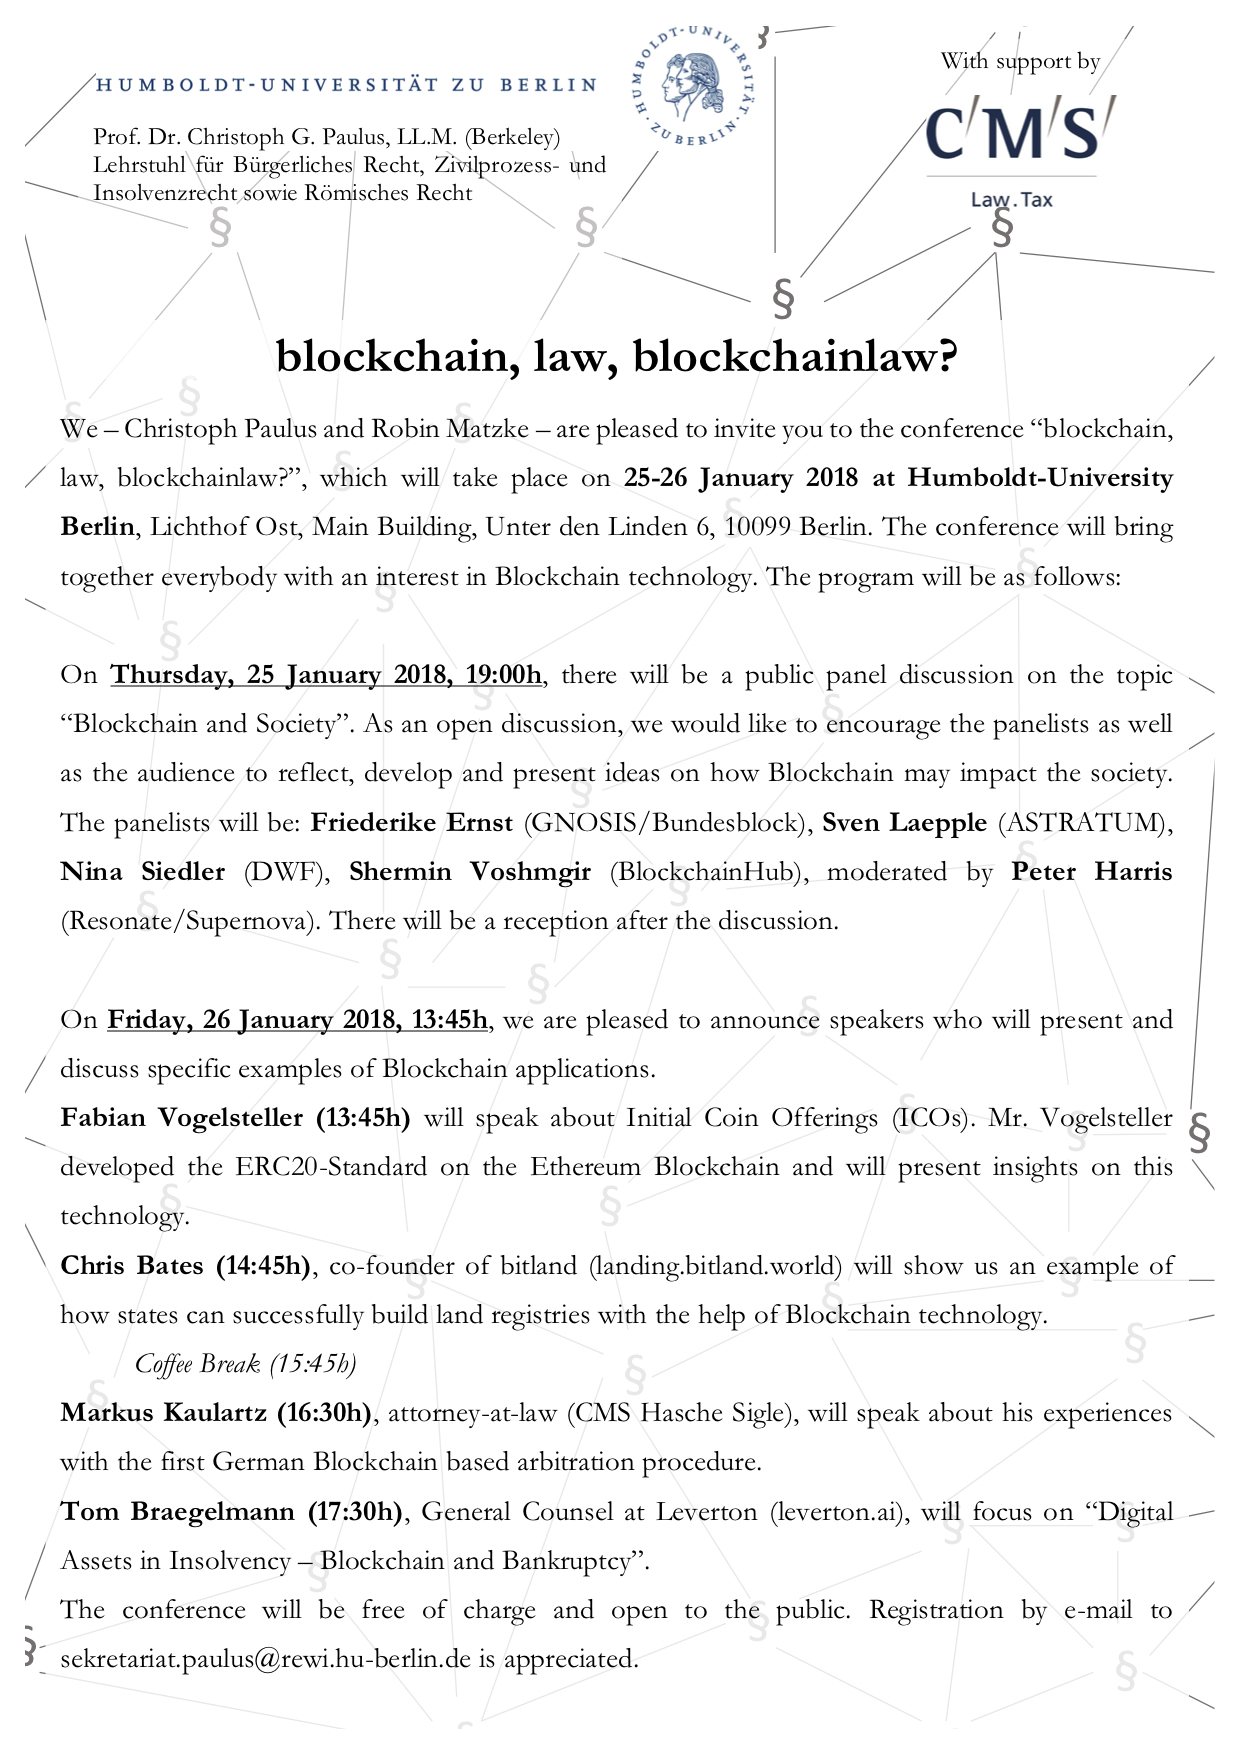 Blockchain Conference Invitation up